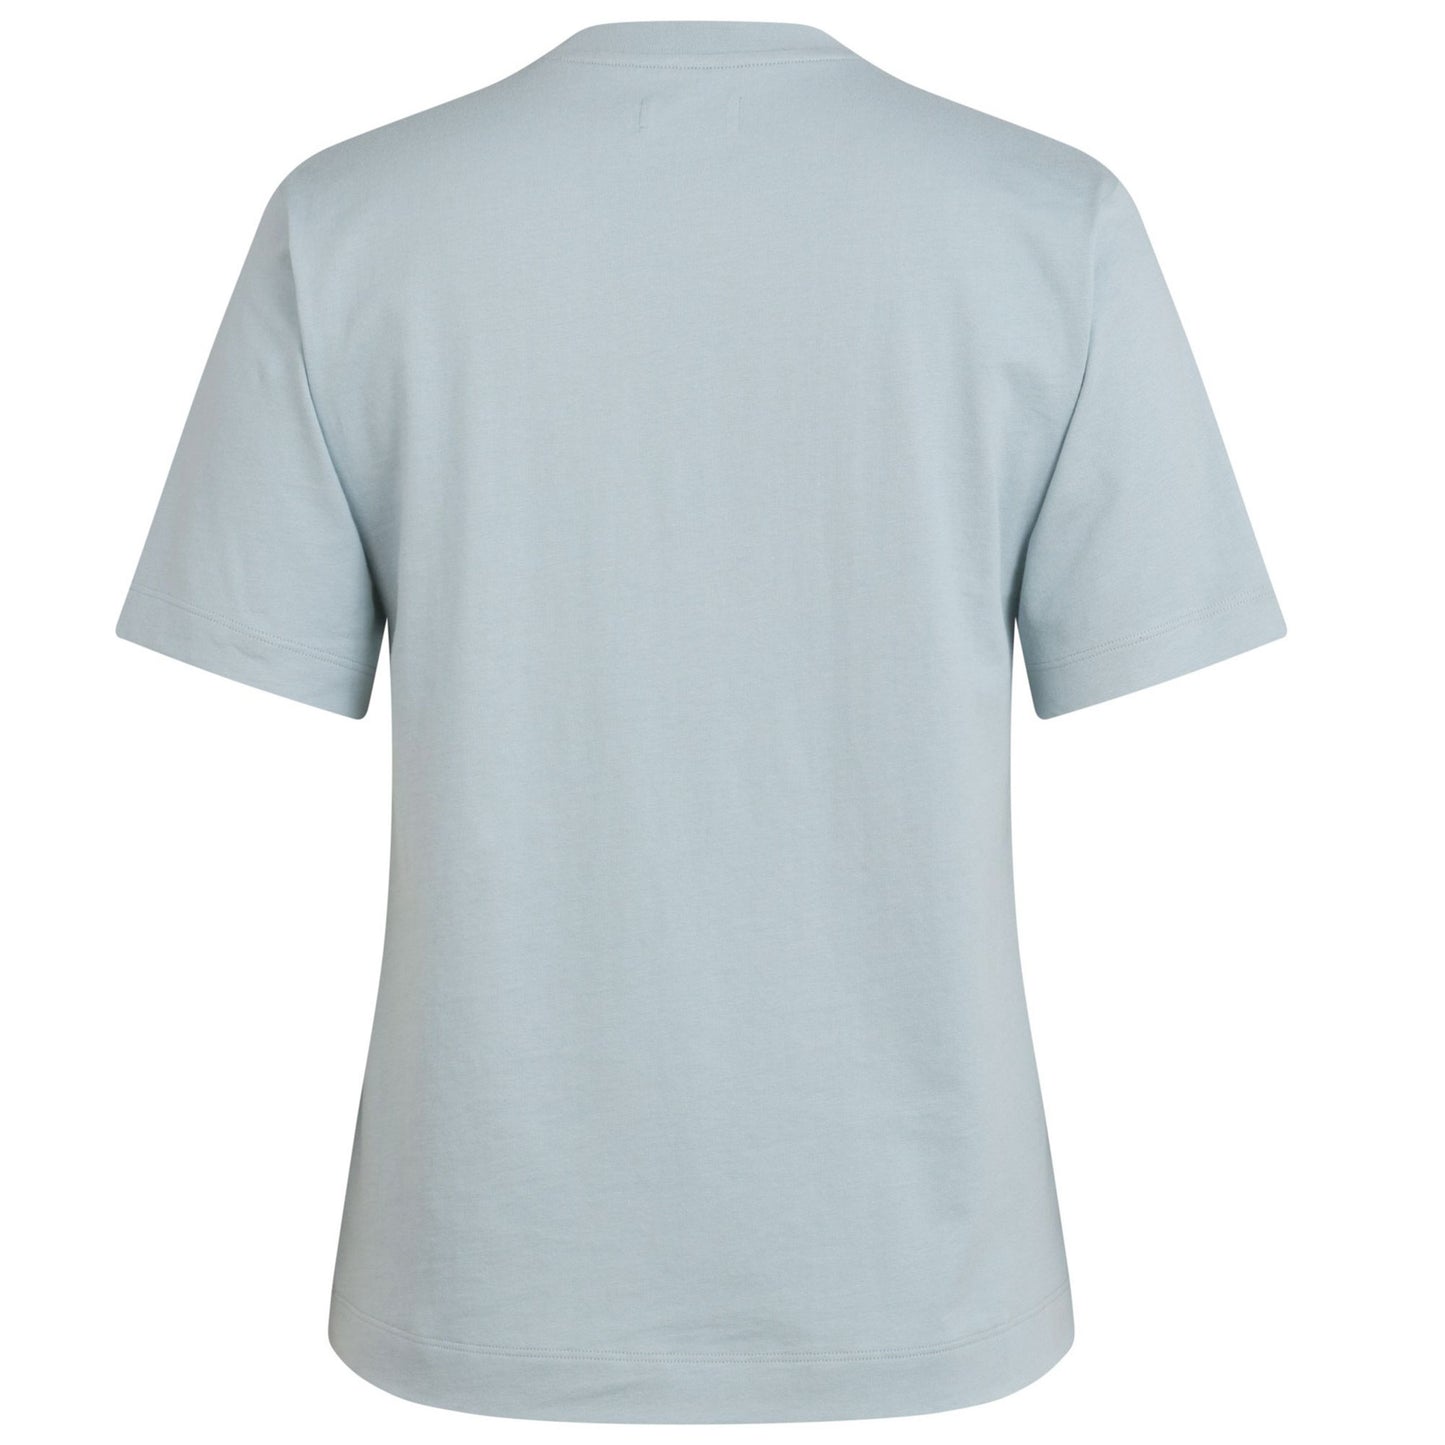 Rapha Women's Logo T-Shirt, Light Blue/Pale Blue